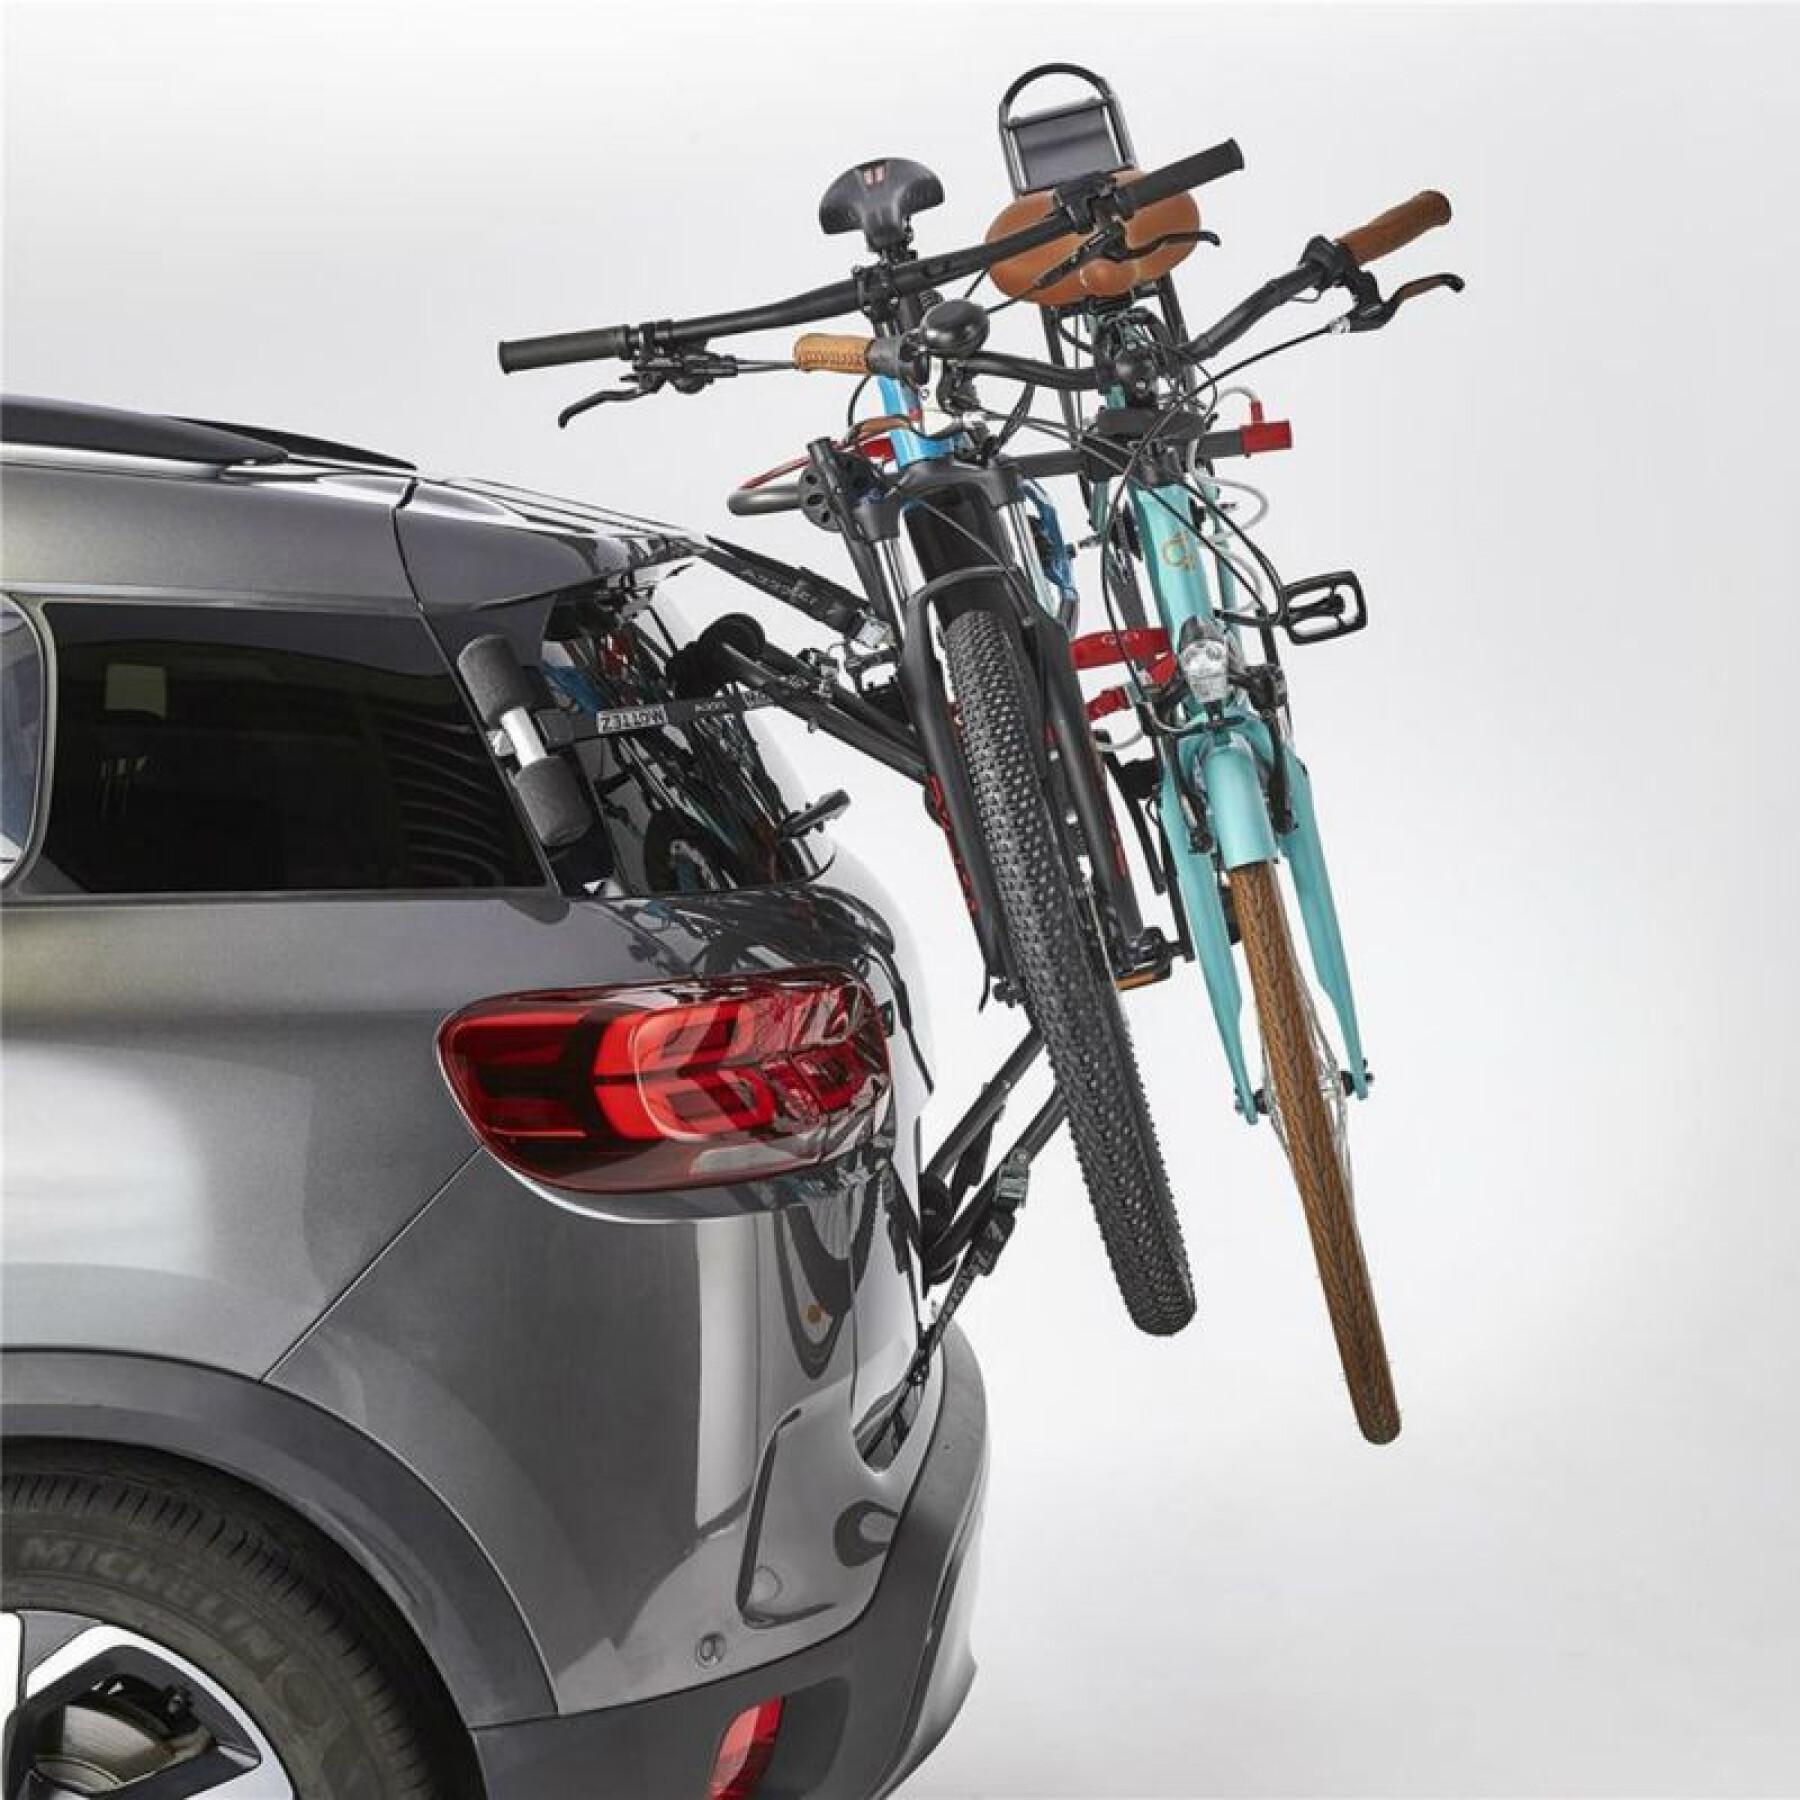 Kofferraumfahrradträger vae für 2 Fahrräder mit Platz mit Schloss - homologiert für 2 vae denken Sie daran, die Batterie zu entfernen Mottez shiva-2